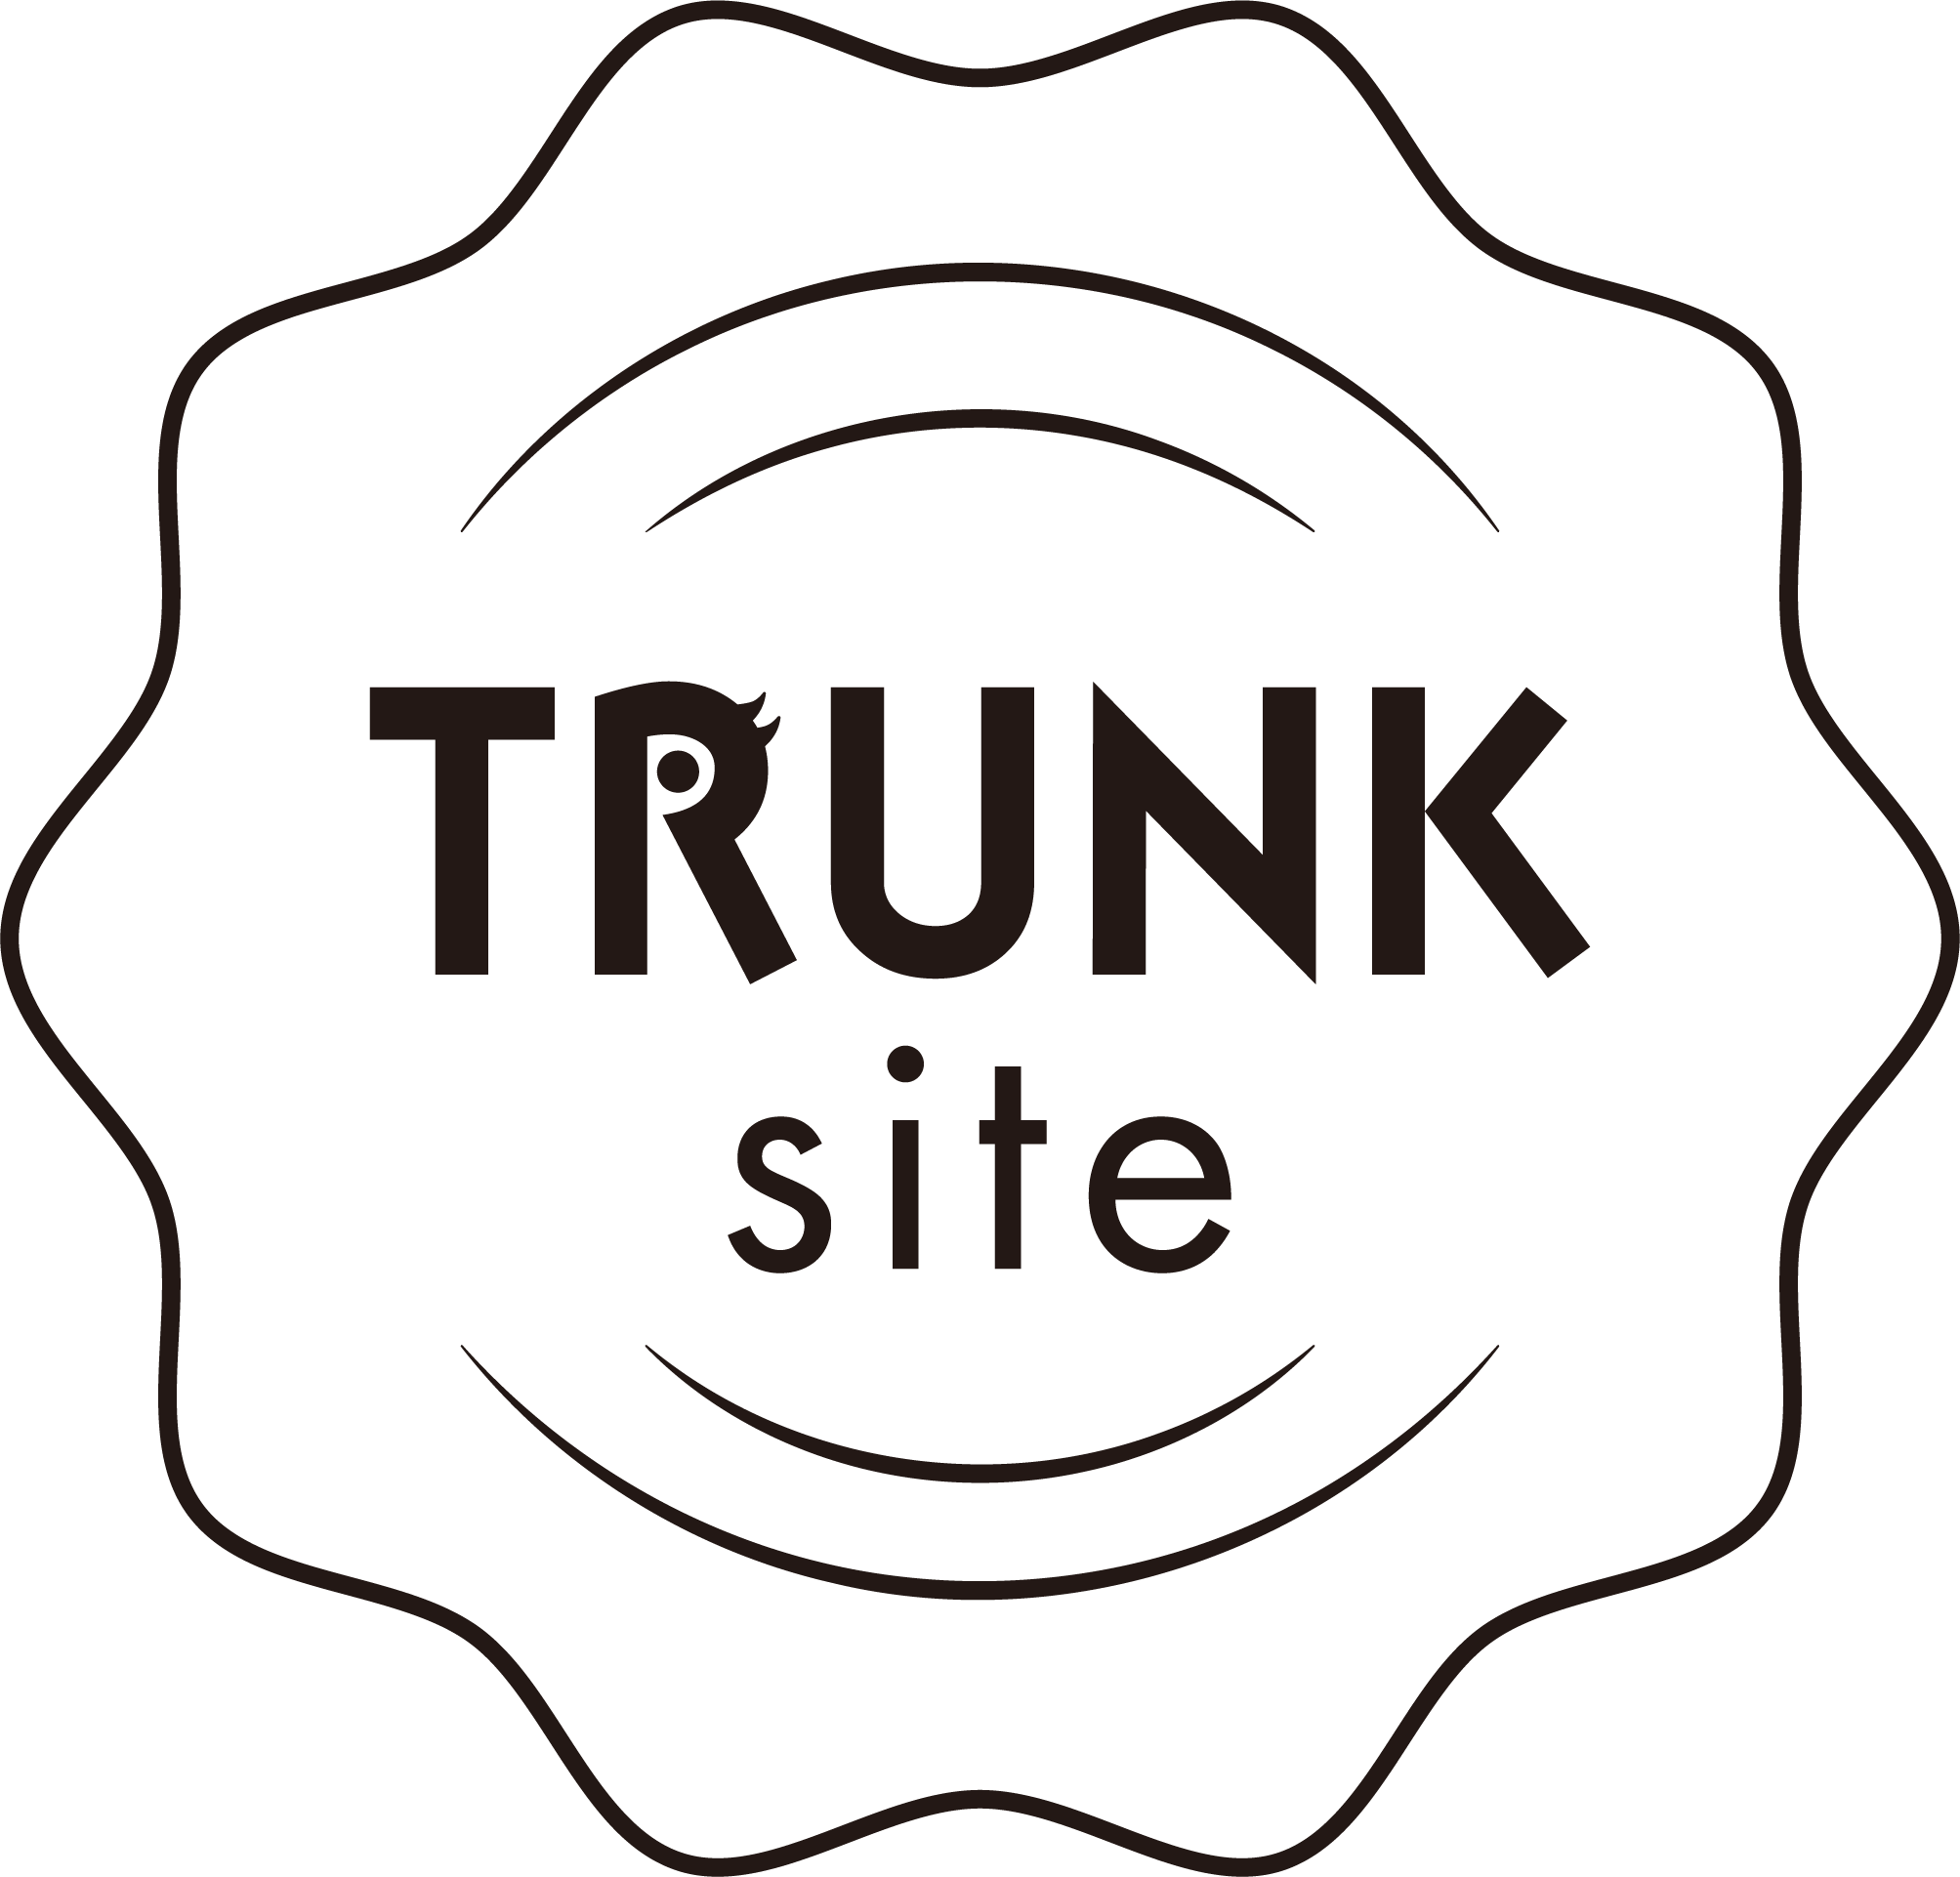 TRUNK site